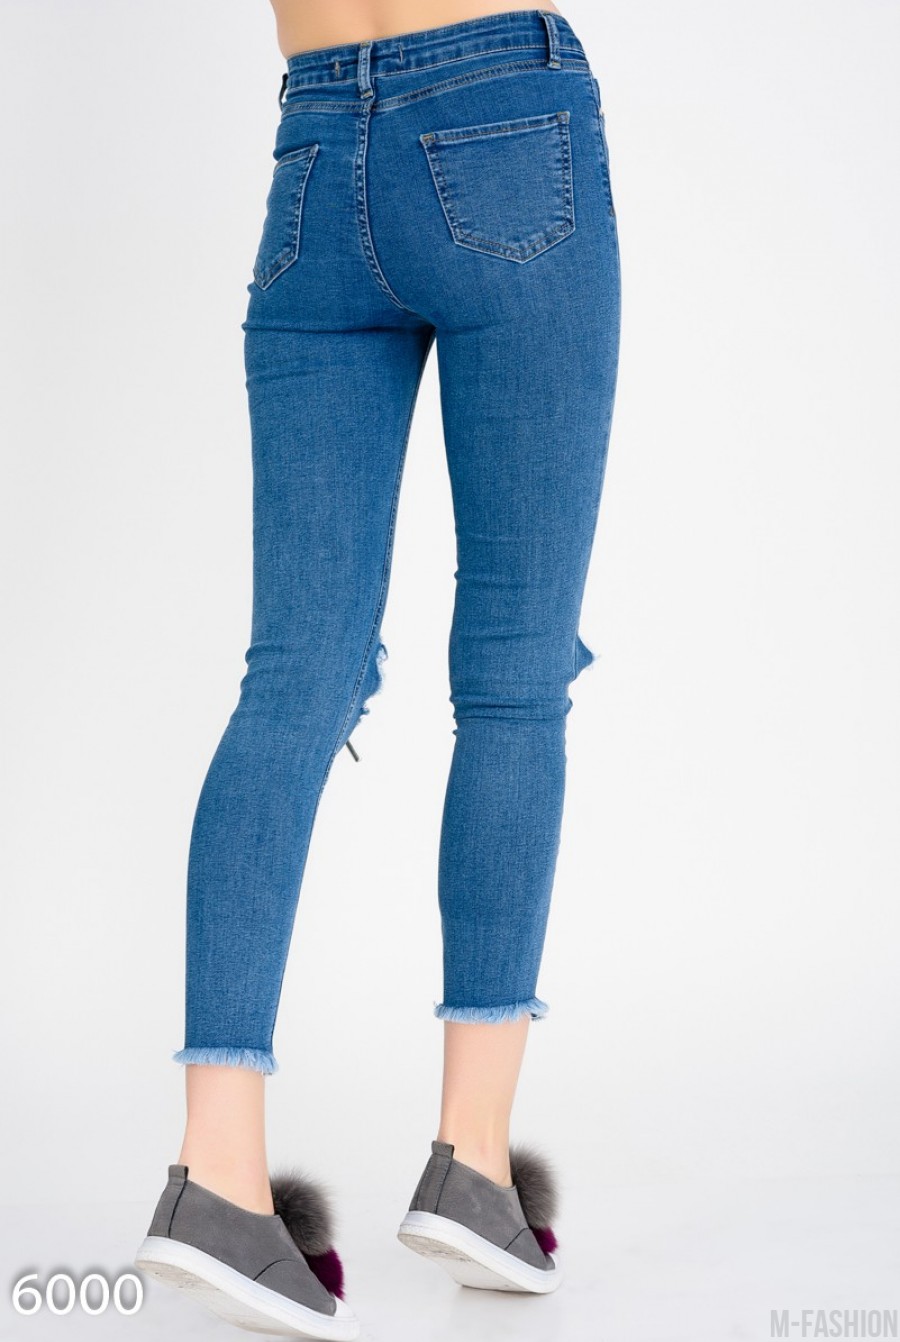 Короткие узкие джинсы с крупными дырками на коленях- Фото 5